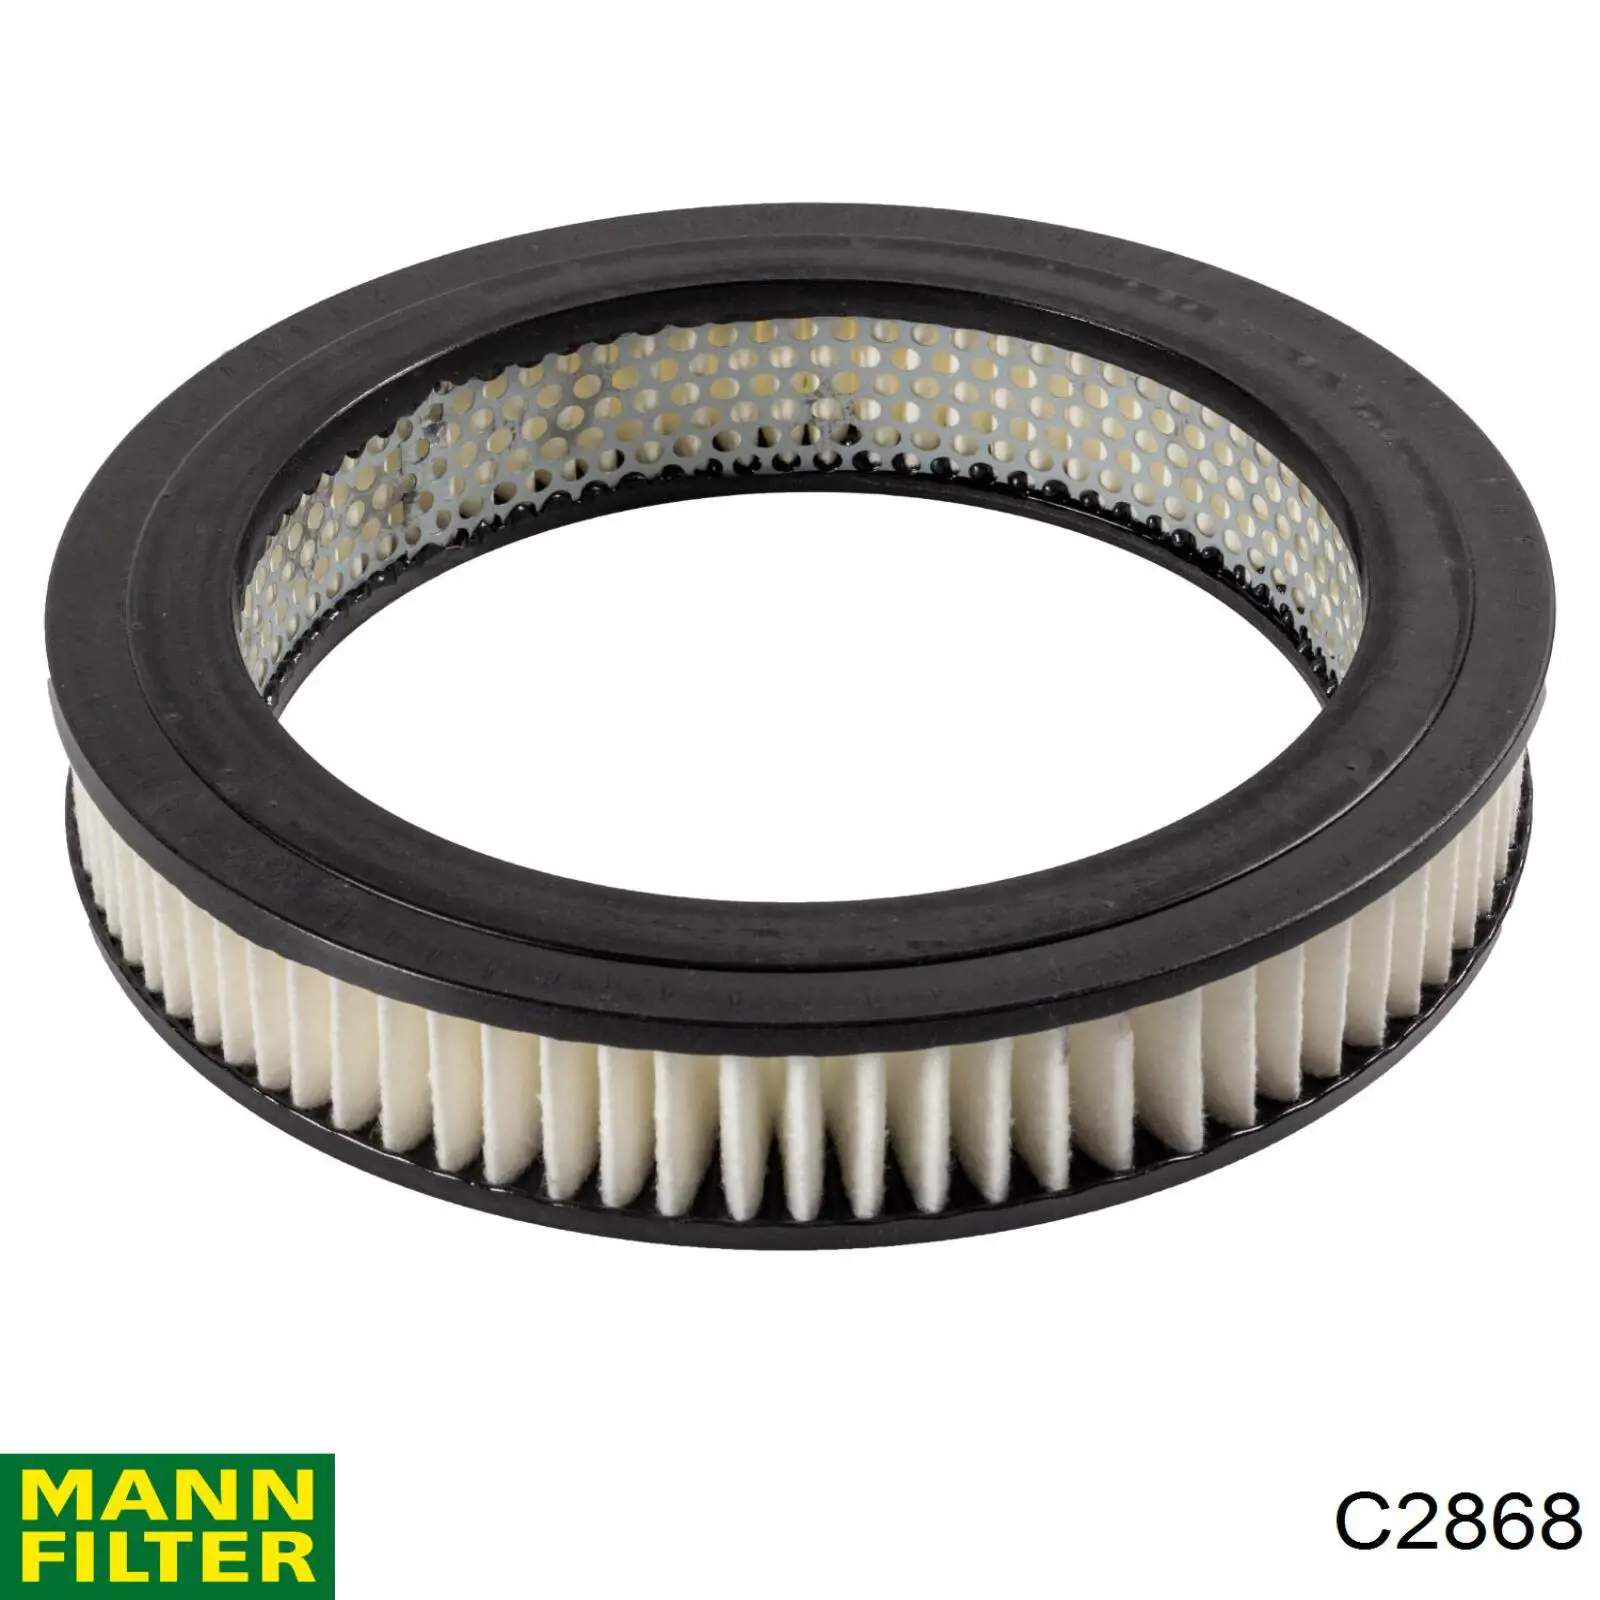 Filtro de aire C2868 Mann-Filter